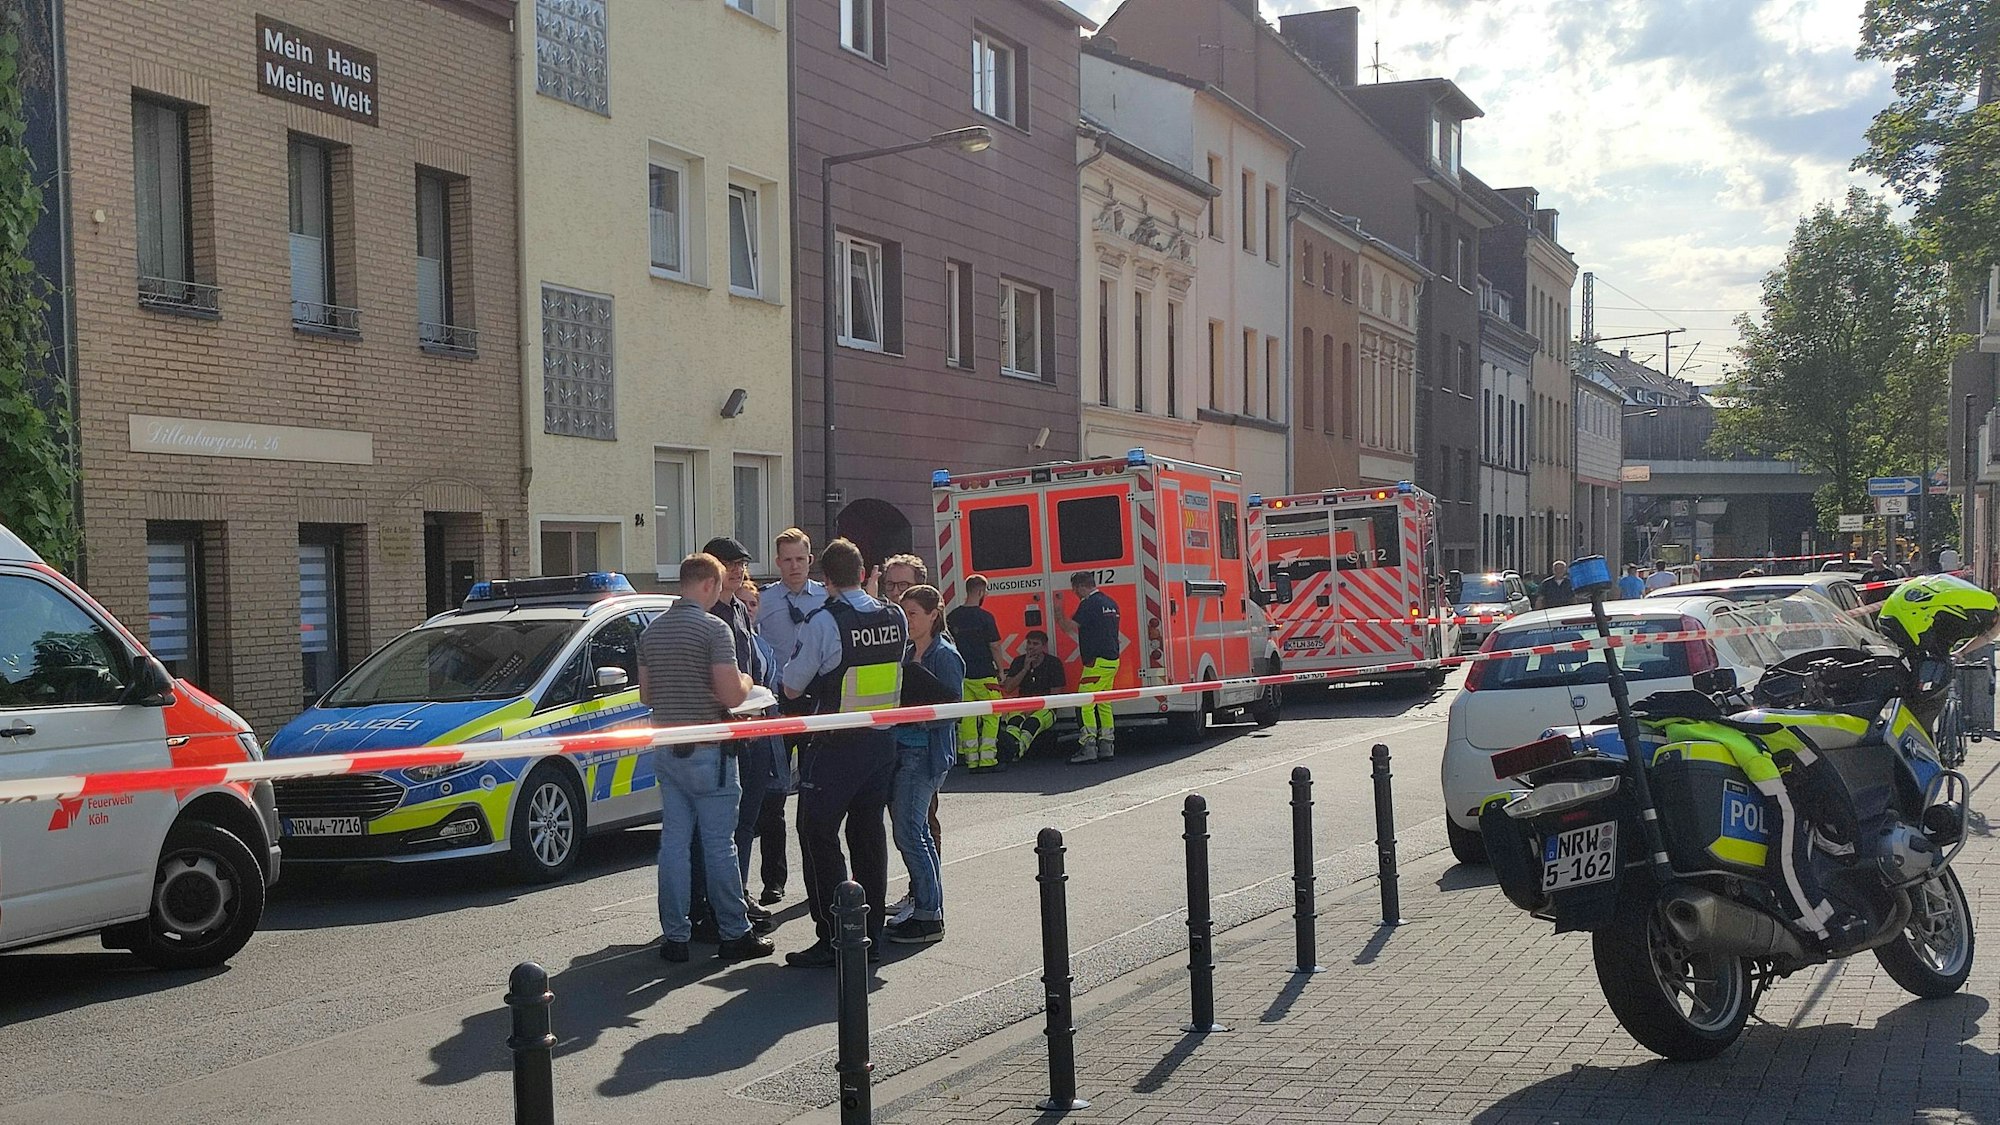 Einsatzfahrzeuge von Polizei und Rettungsdienst sowie Einsatzkräfte stehen auf der Dillenburger Straße. Der Bereich ist mit Flatterband abgesperrt.